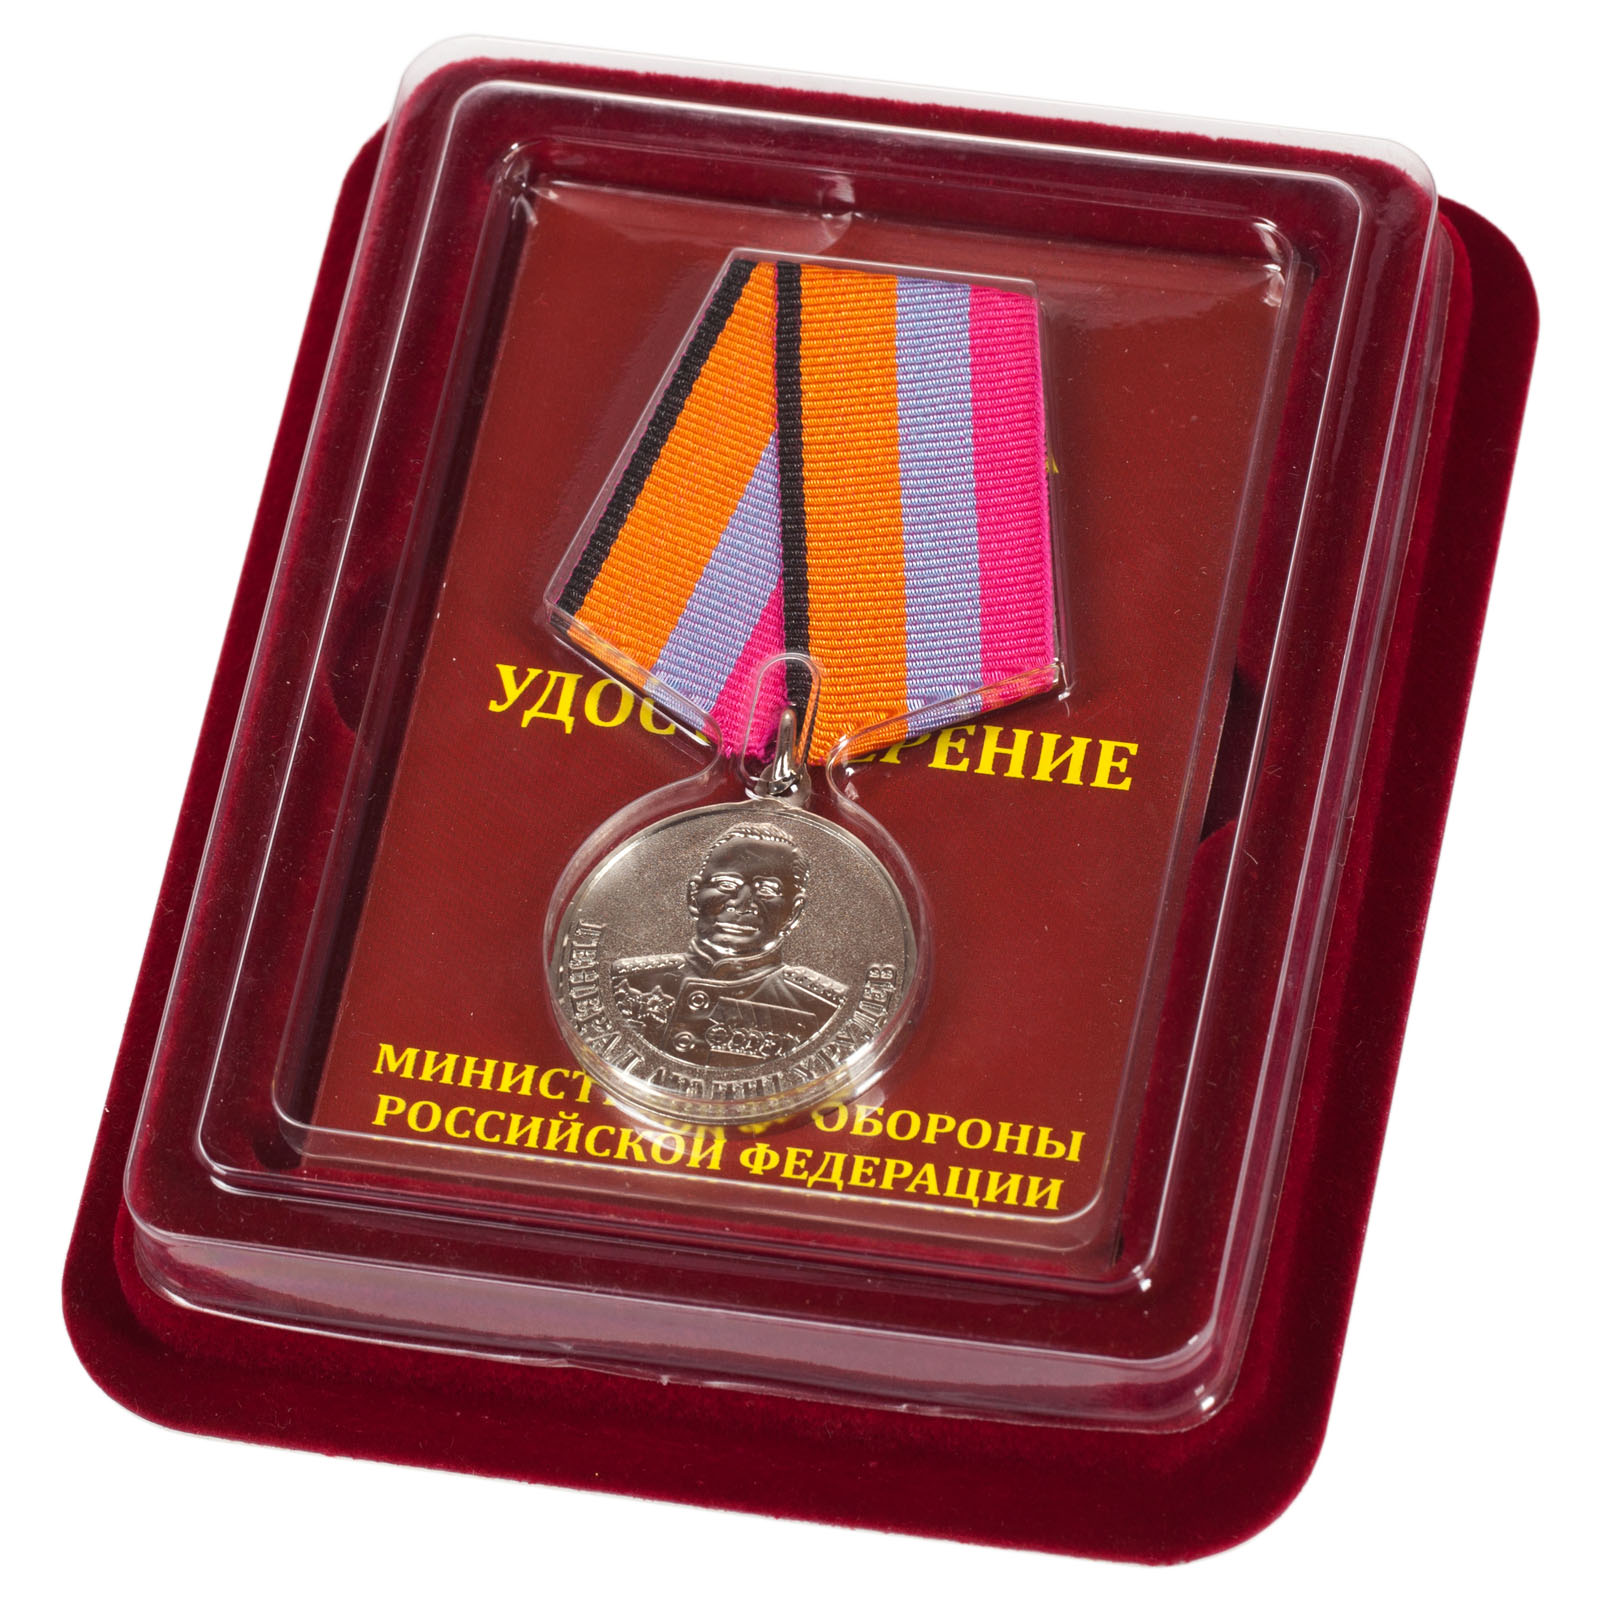 Купить медаль "Генерал Хрулев" МО РФ с удостоверением в футляре наградном